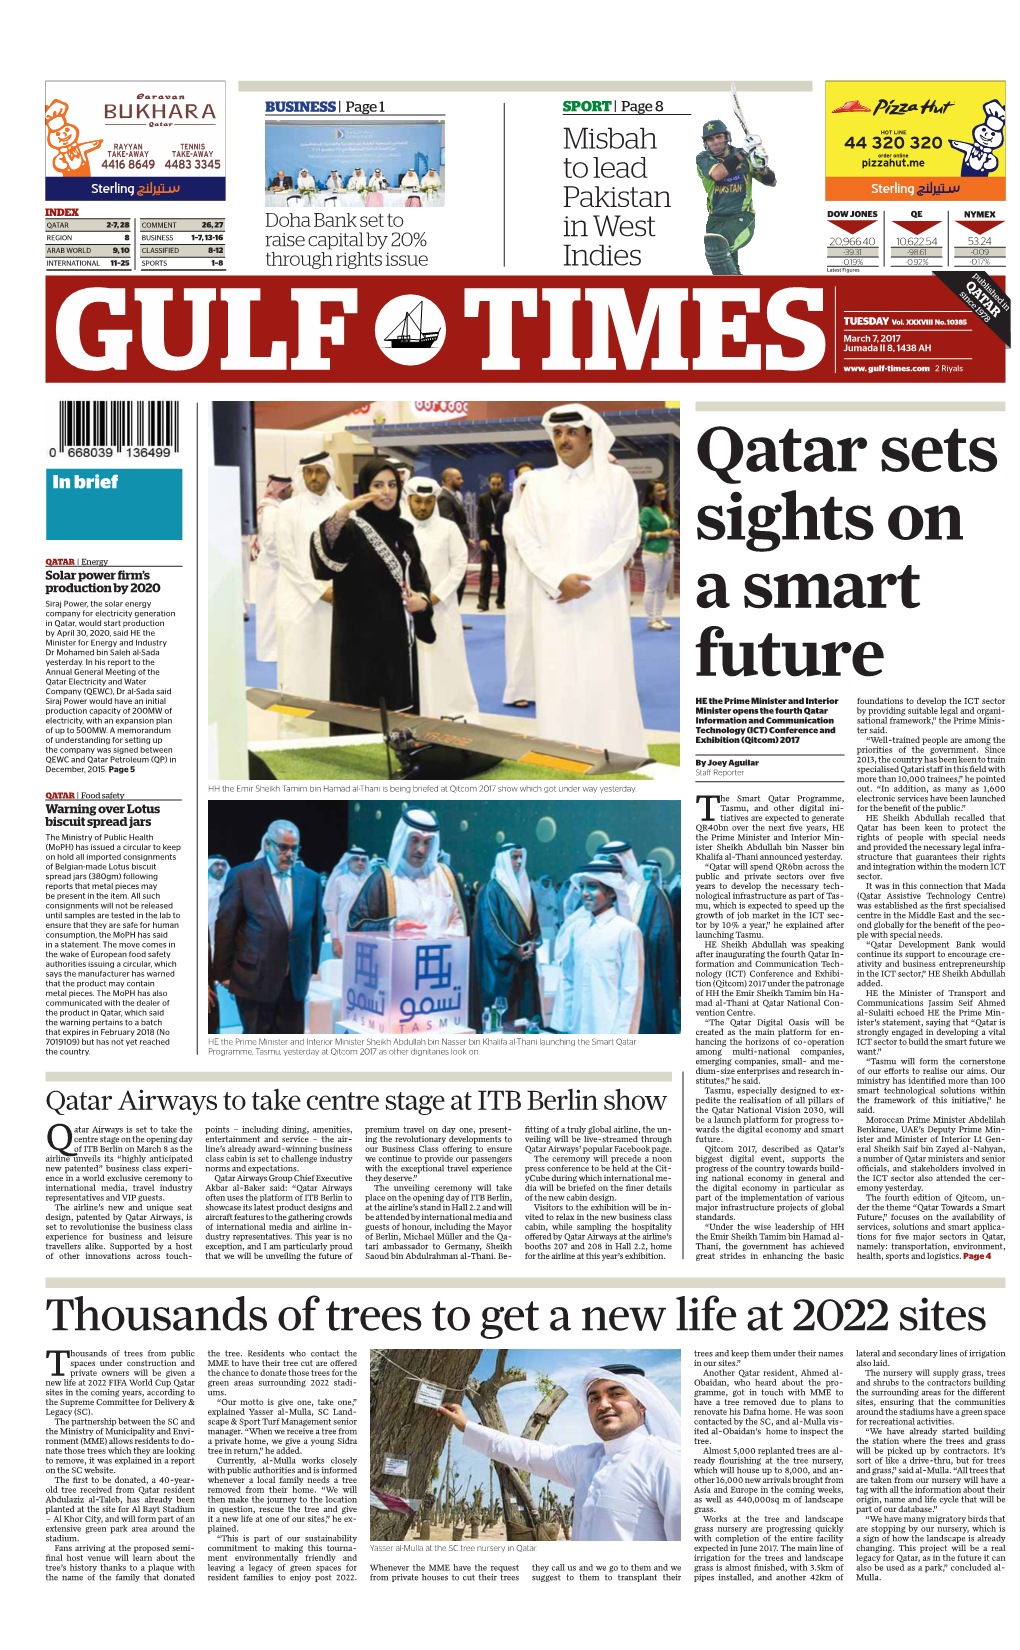 Qatar Sets Sights on a Smart Future